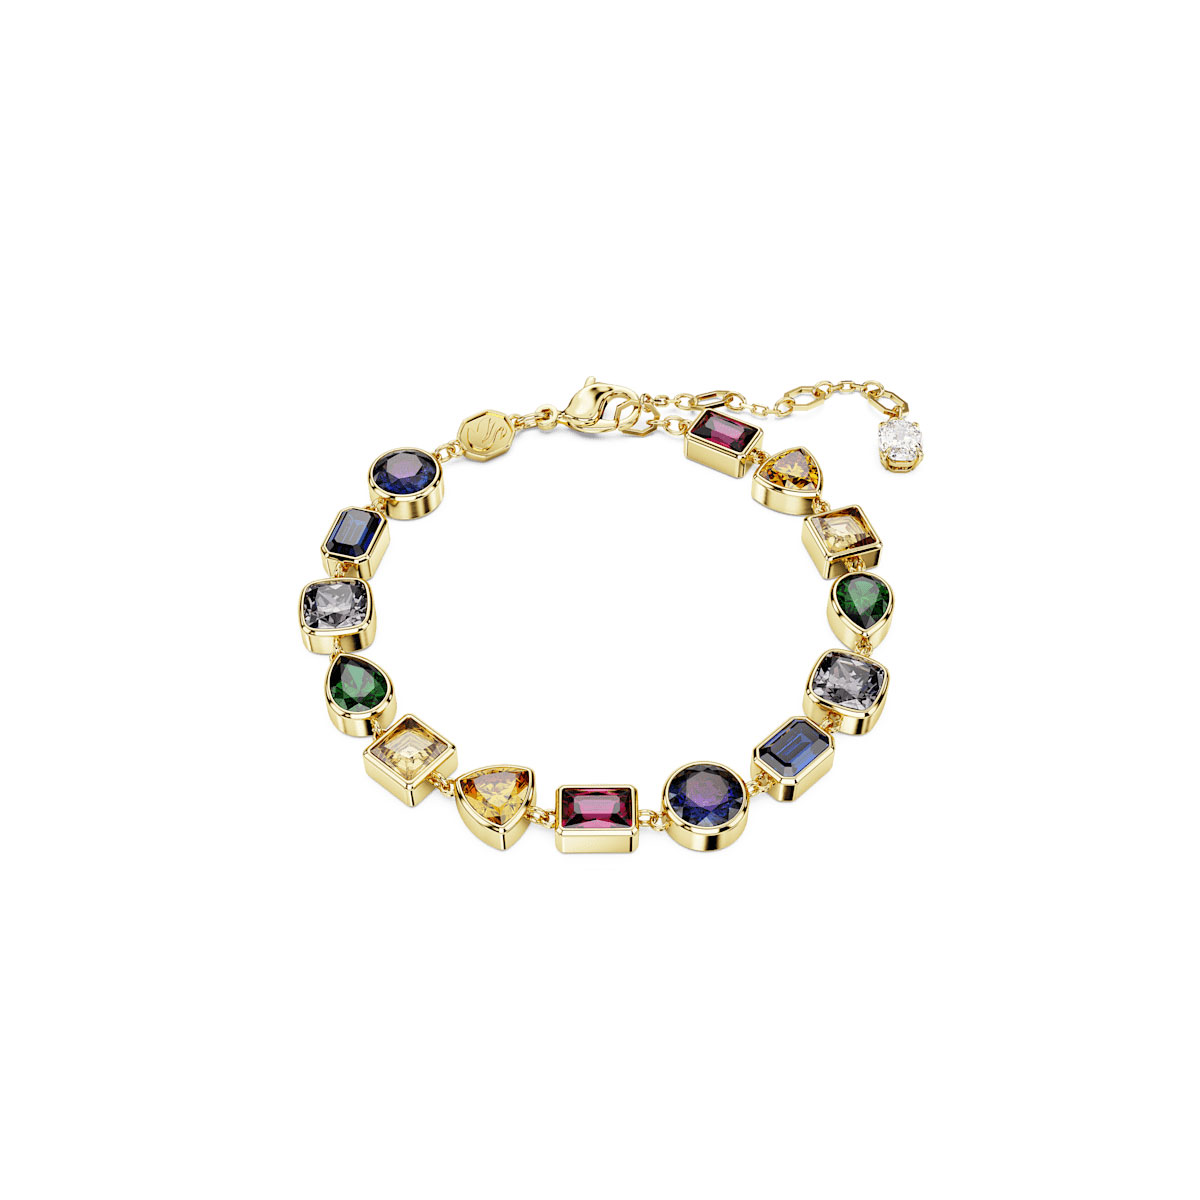 Swarovski Stilla bracelet, Mixed cuts, Multicolored, Gold